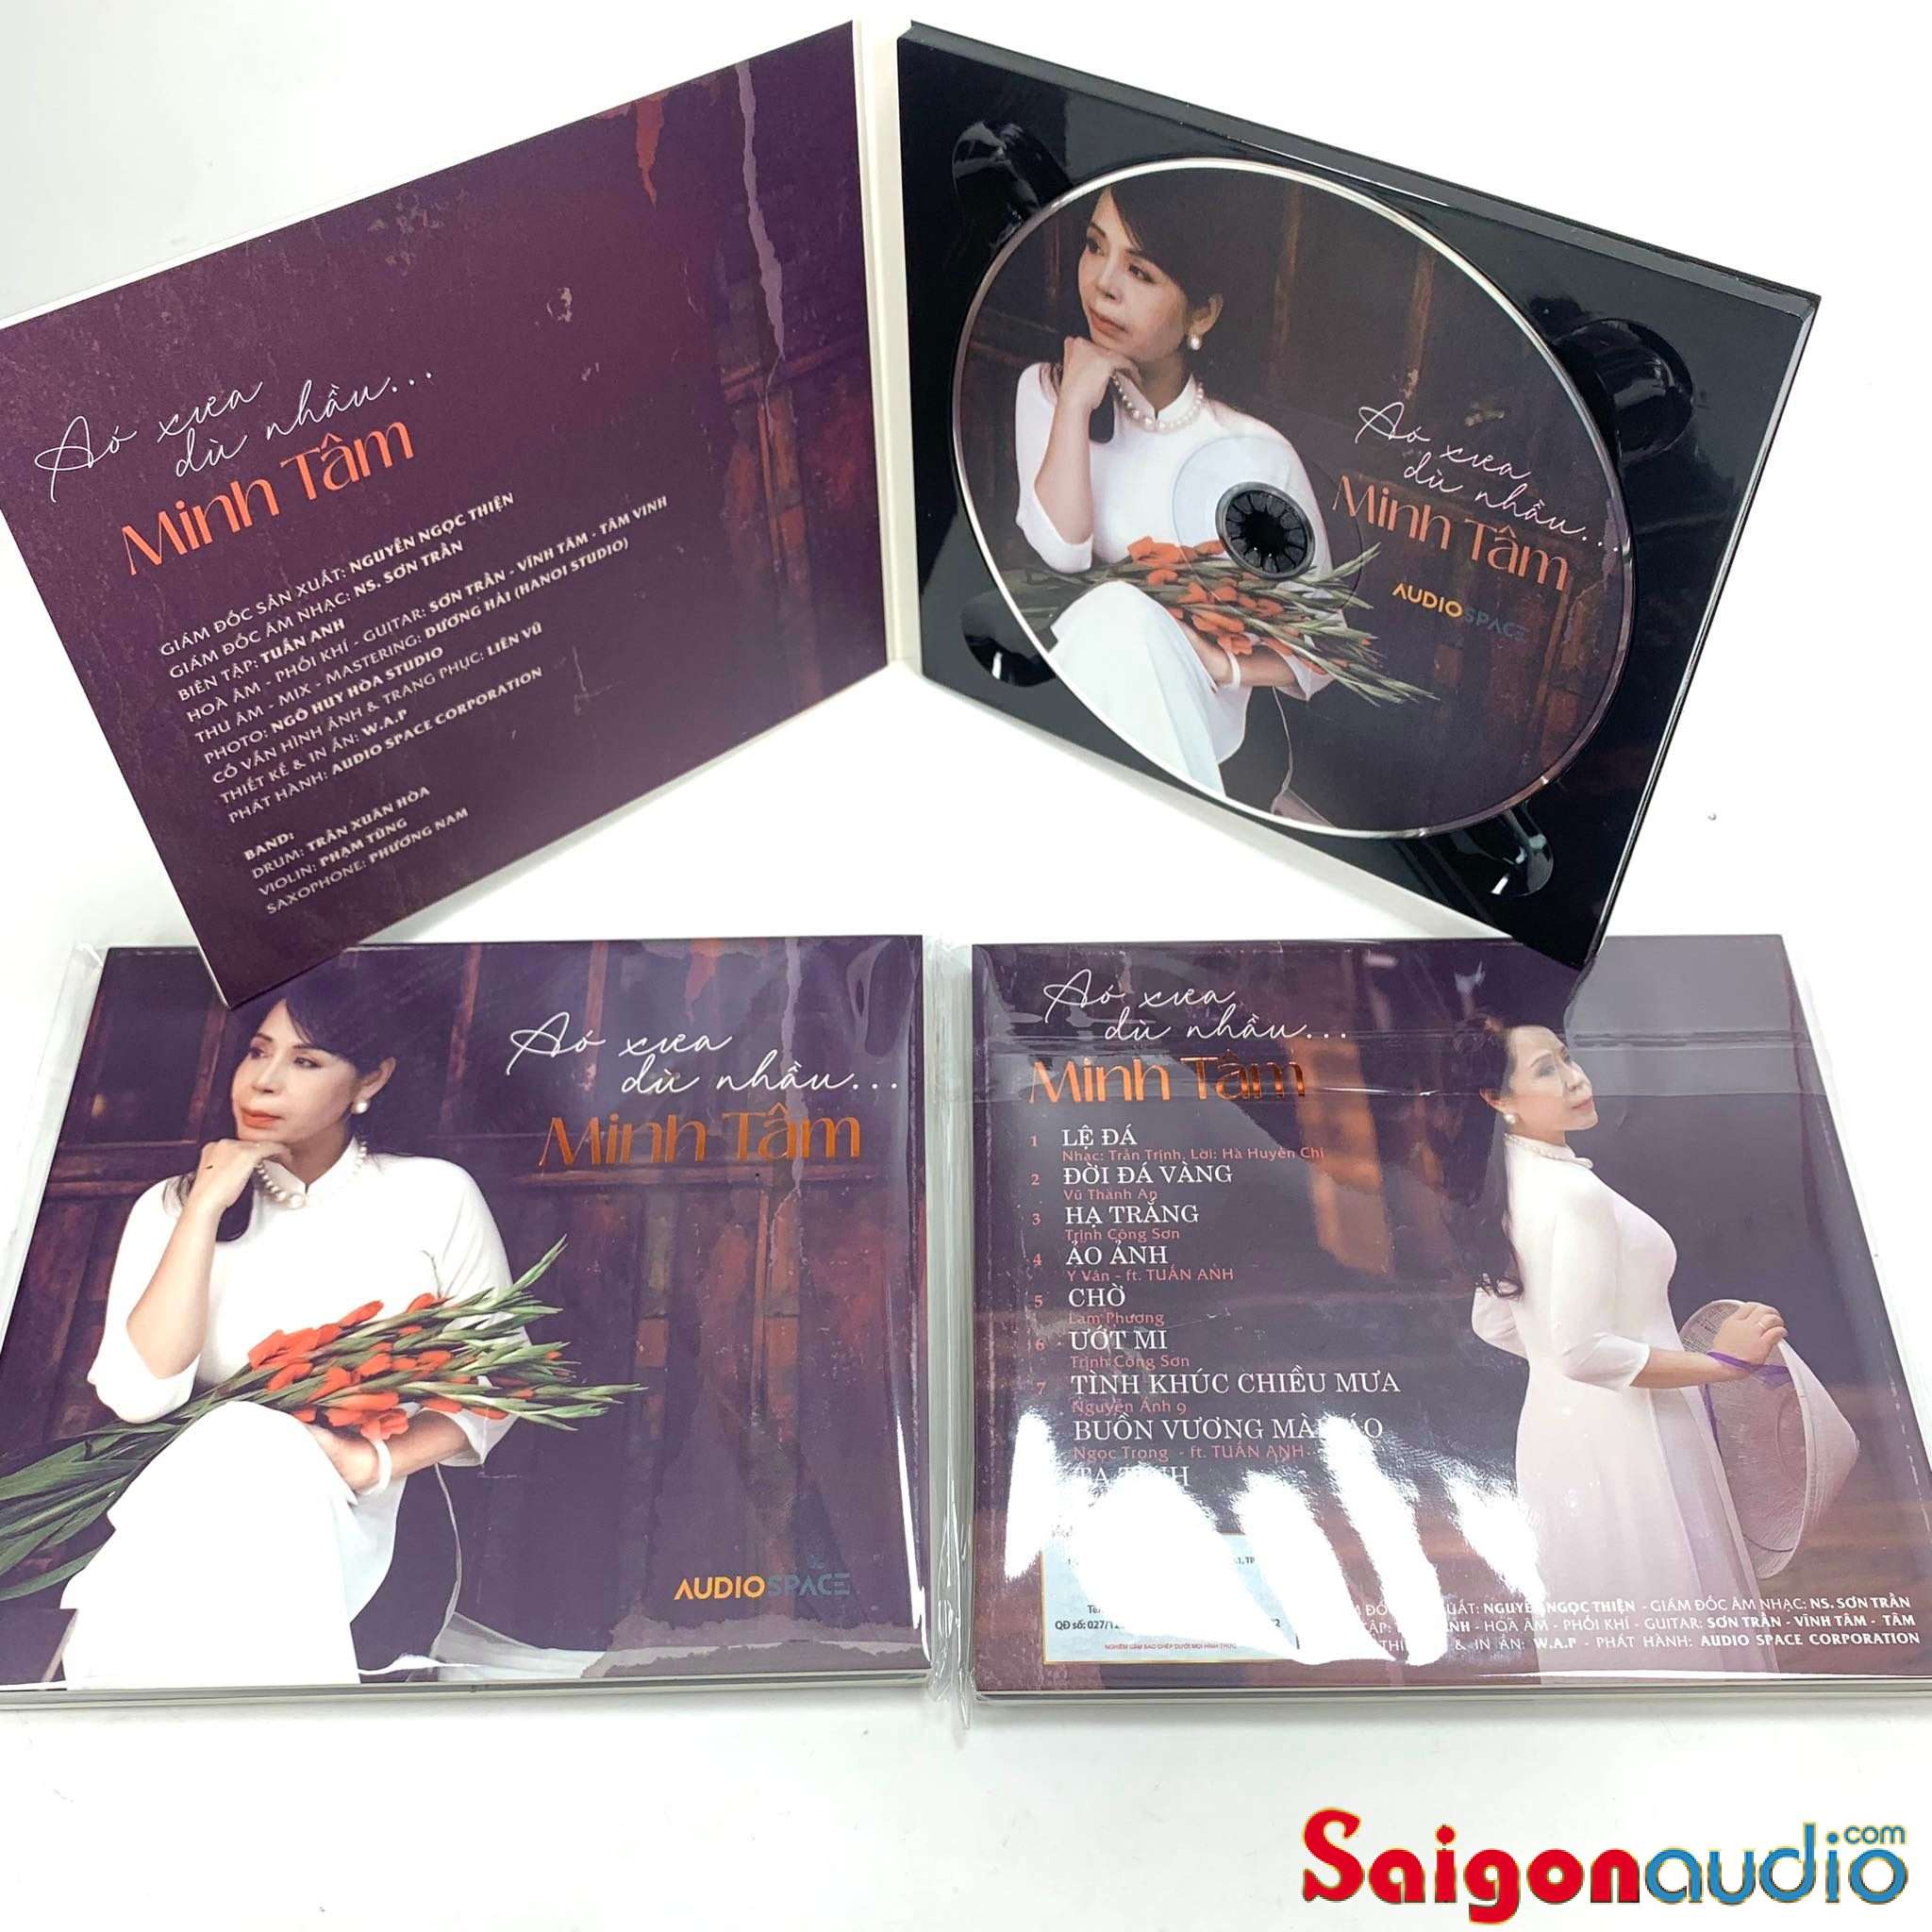 Đĩa CD nhạc gốc Minh Tâm - Áo Xưa Dù Nhàu (Free ship khi mua 2 đĩa CD cùng hoặc khác loại)